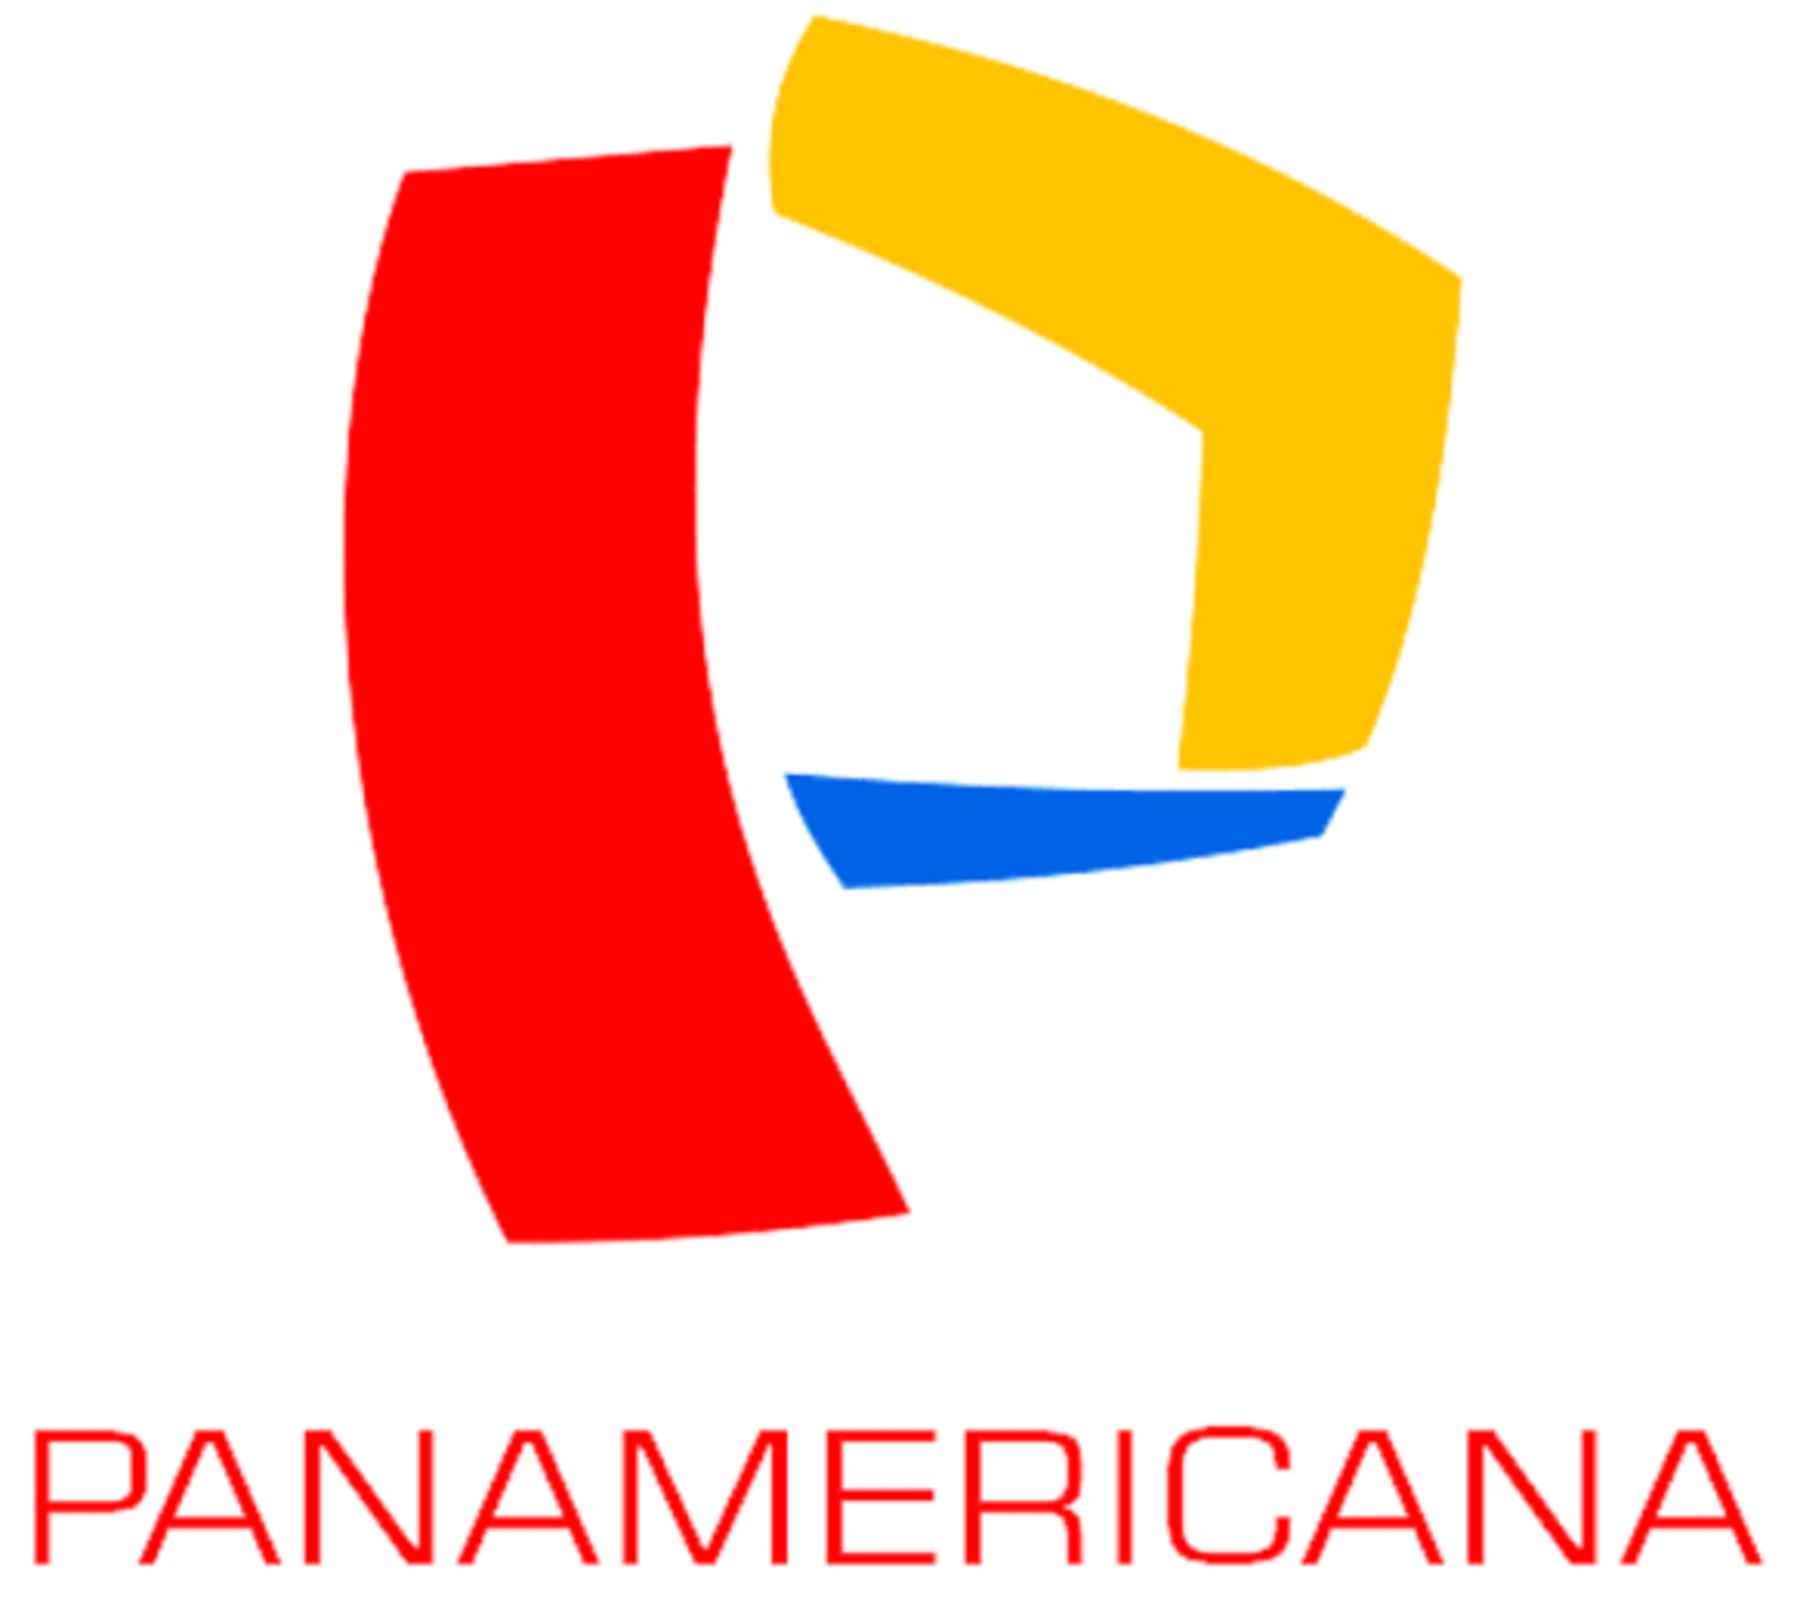 Panamericana Televisión